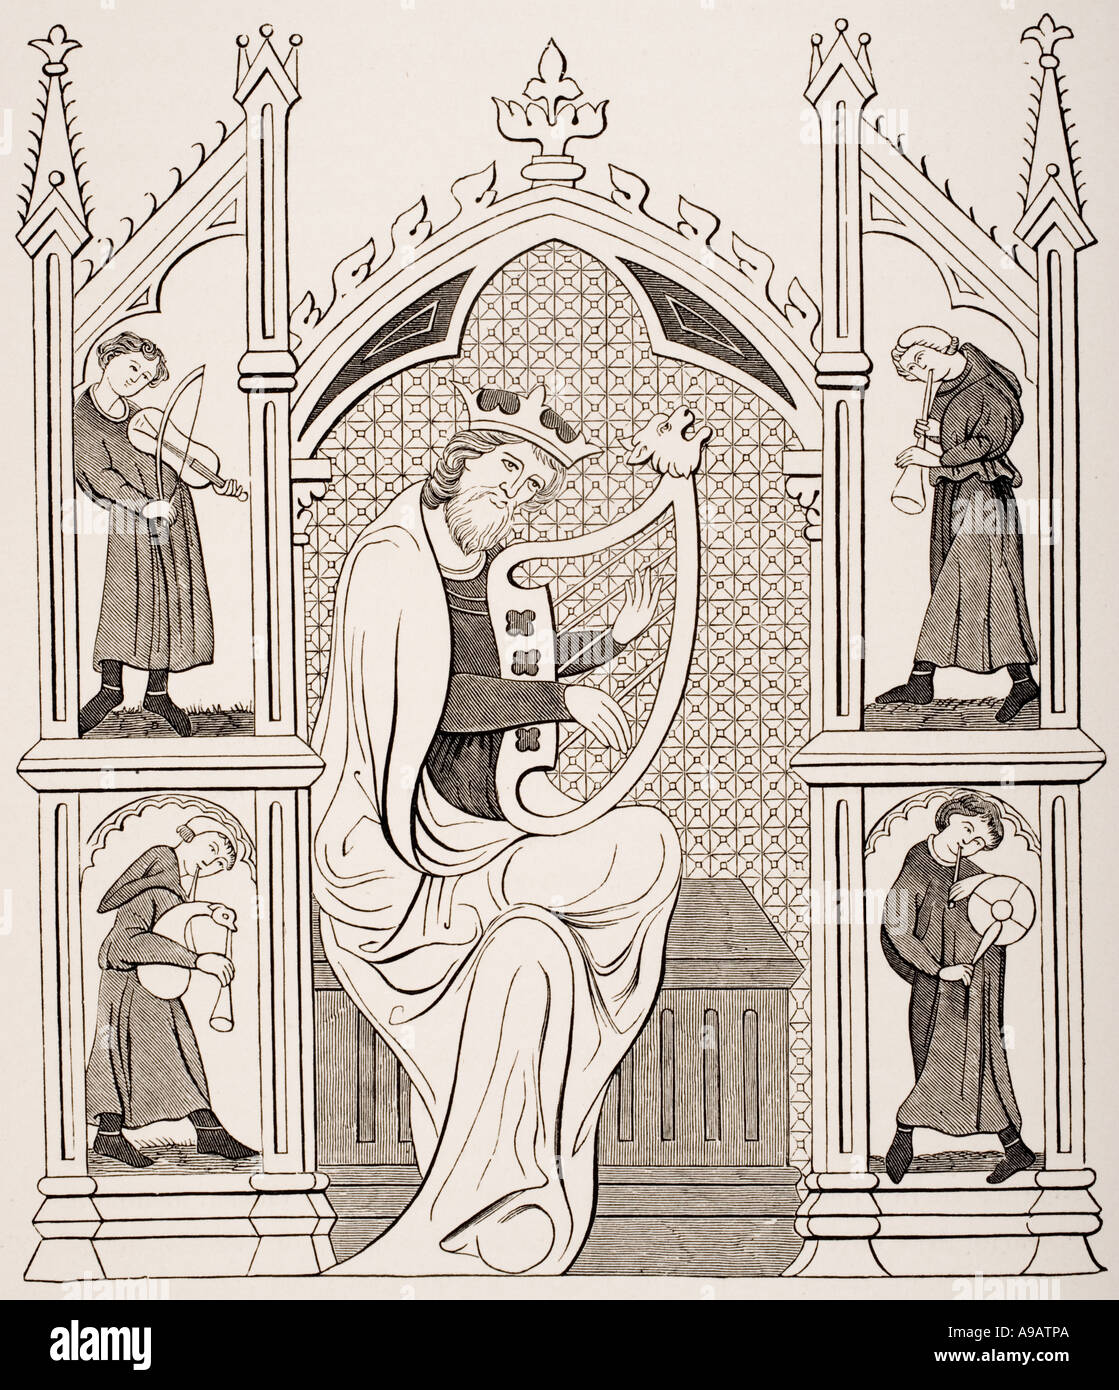 König David spielen auf die Leier von vier Musikern umgeben, alle tragen Kostüme des 13. Jahrhunderts. Stockfoto